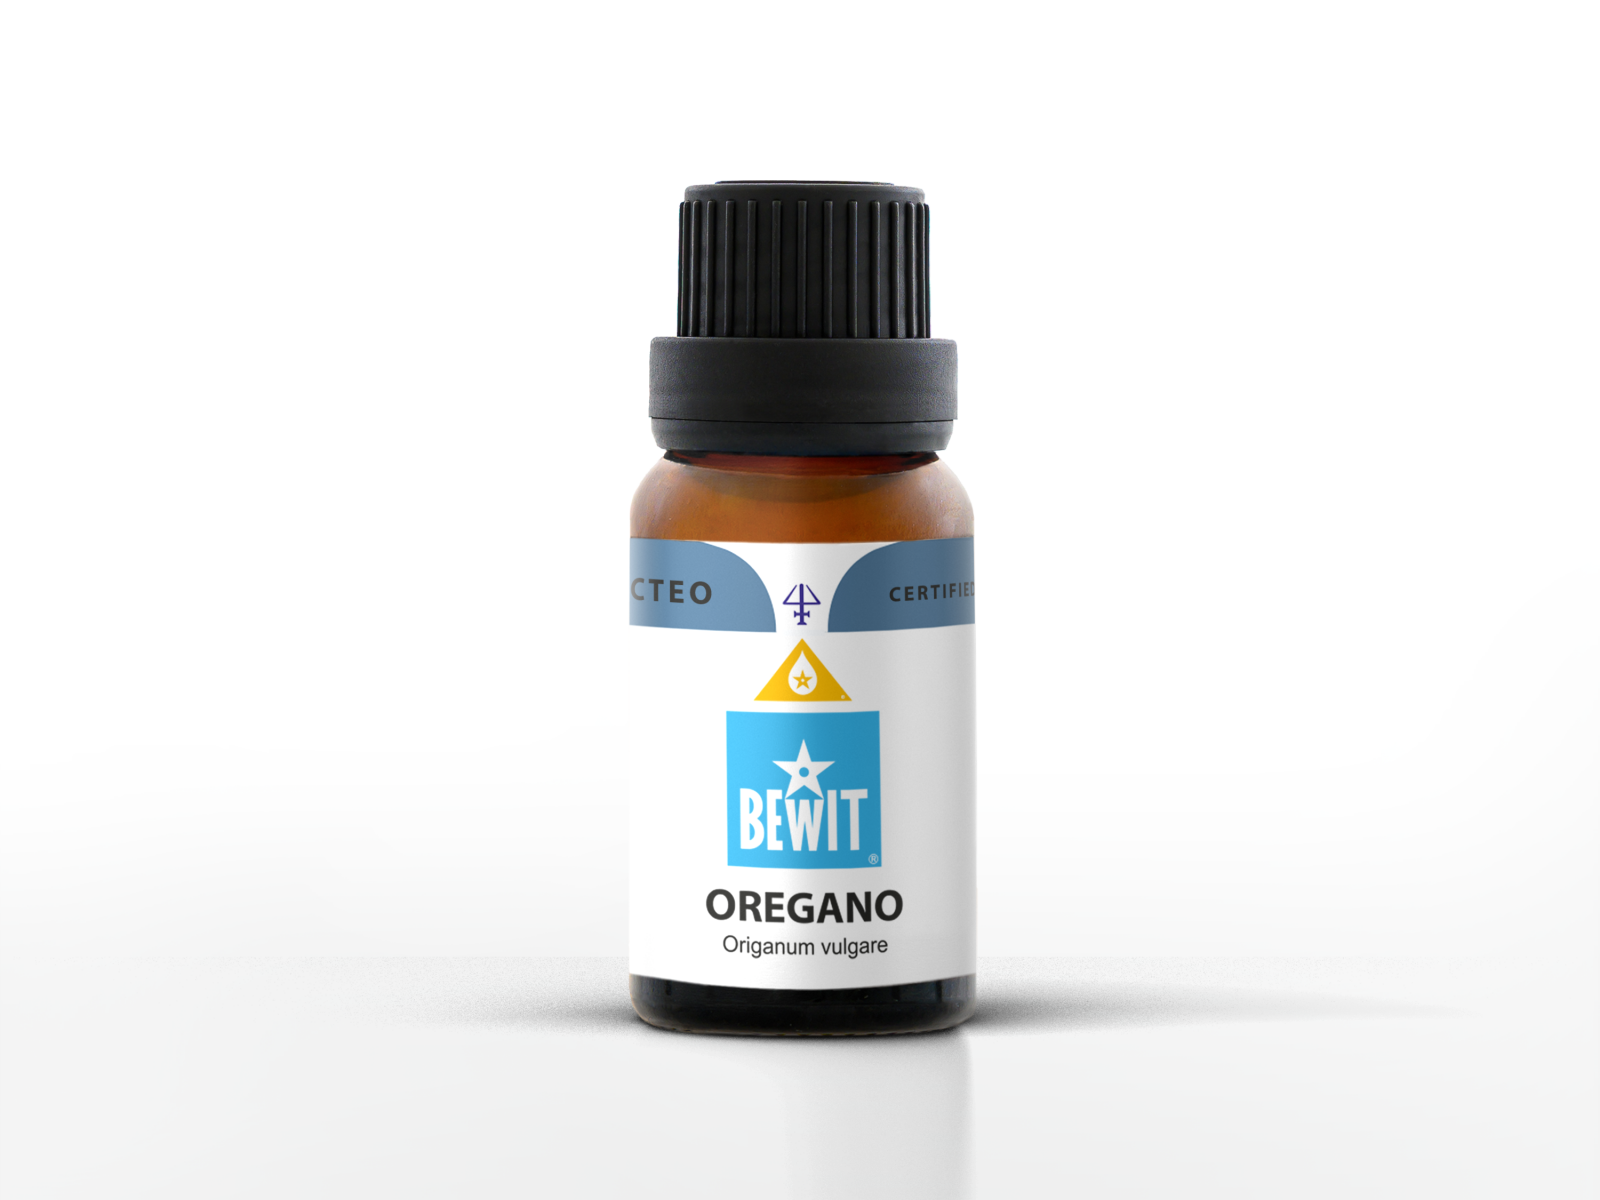 Oregano - It is a 100% pure essential oil - 3